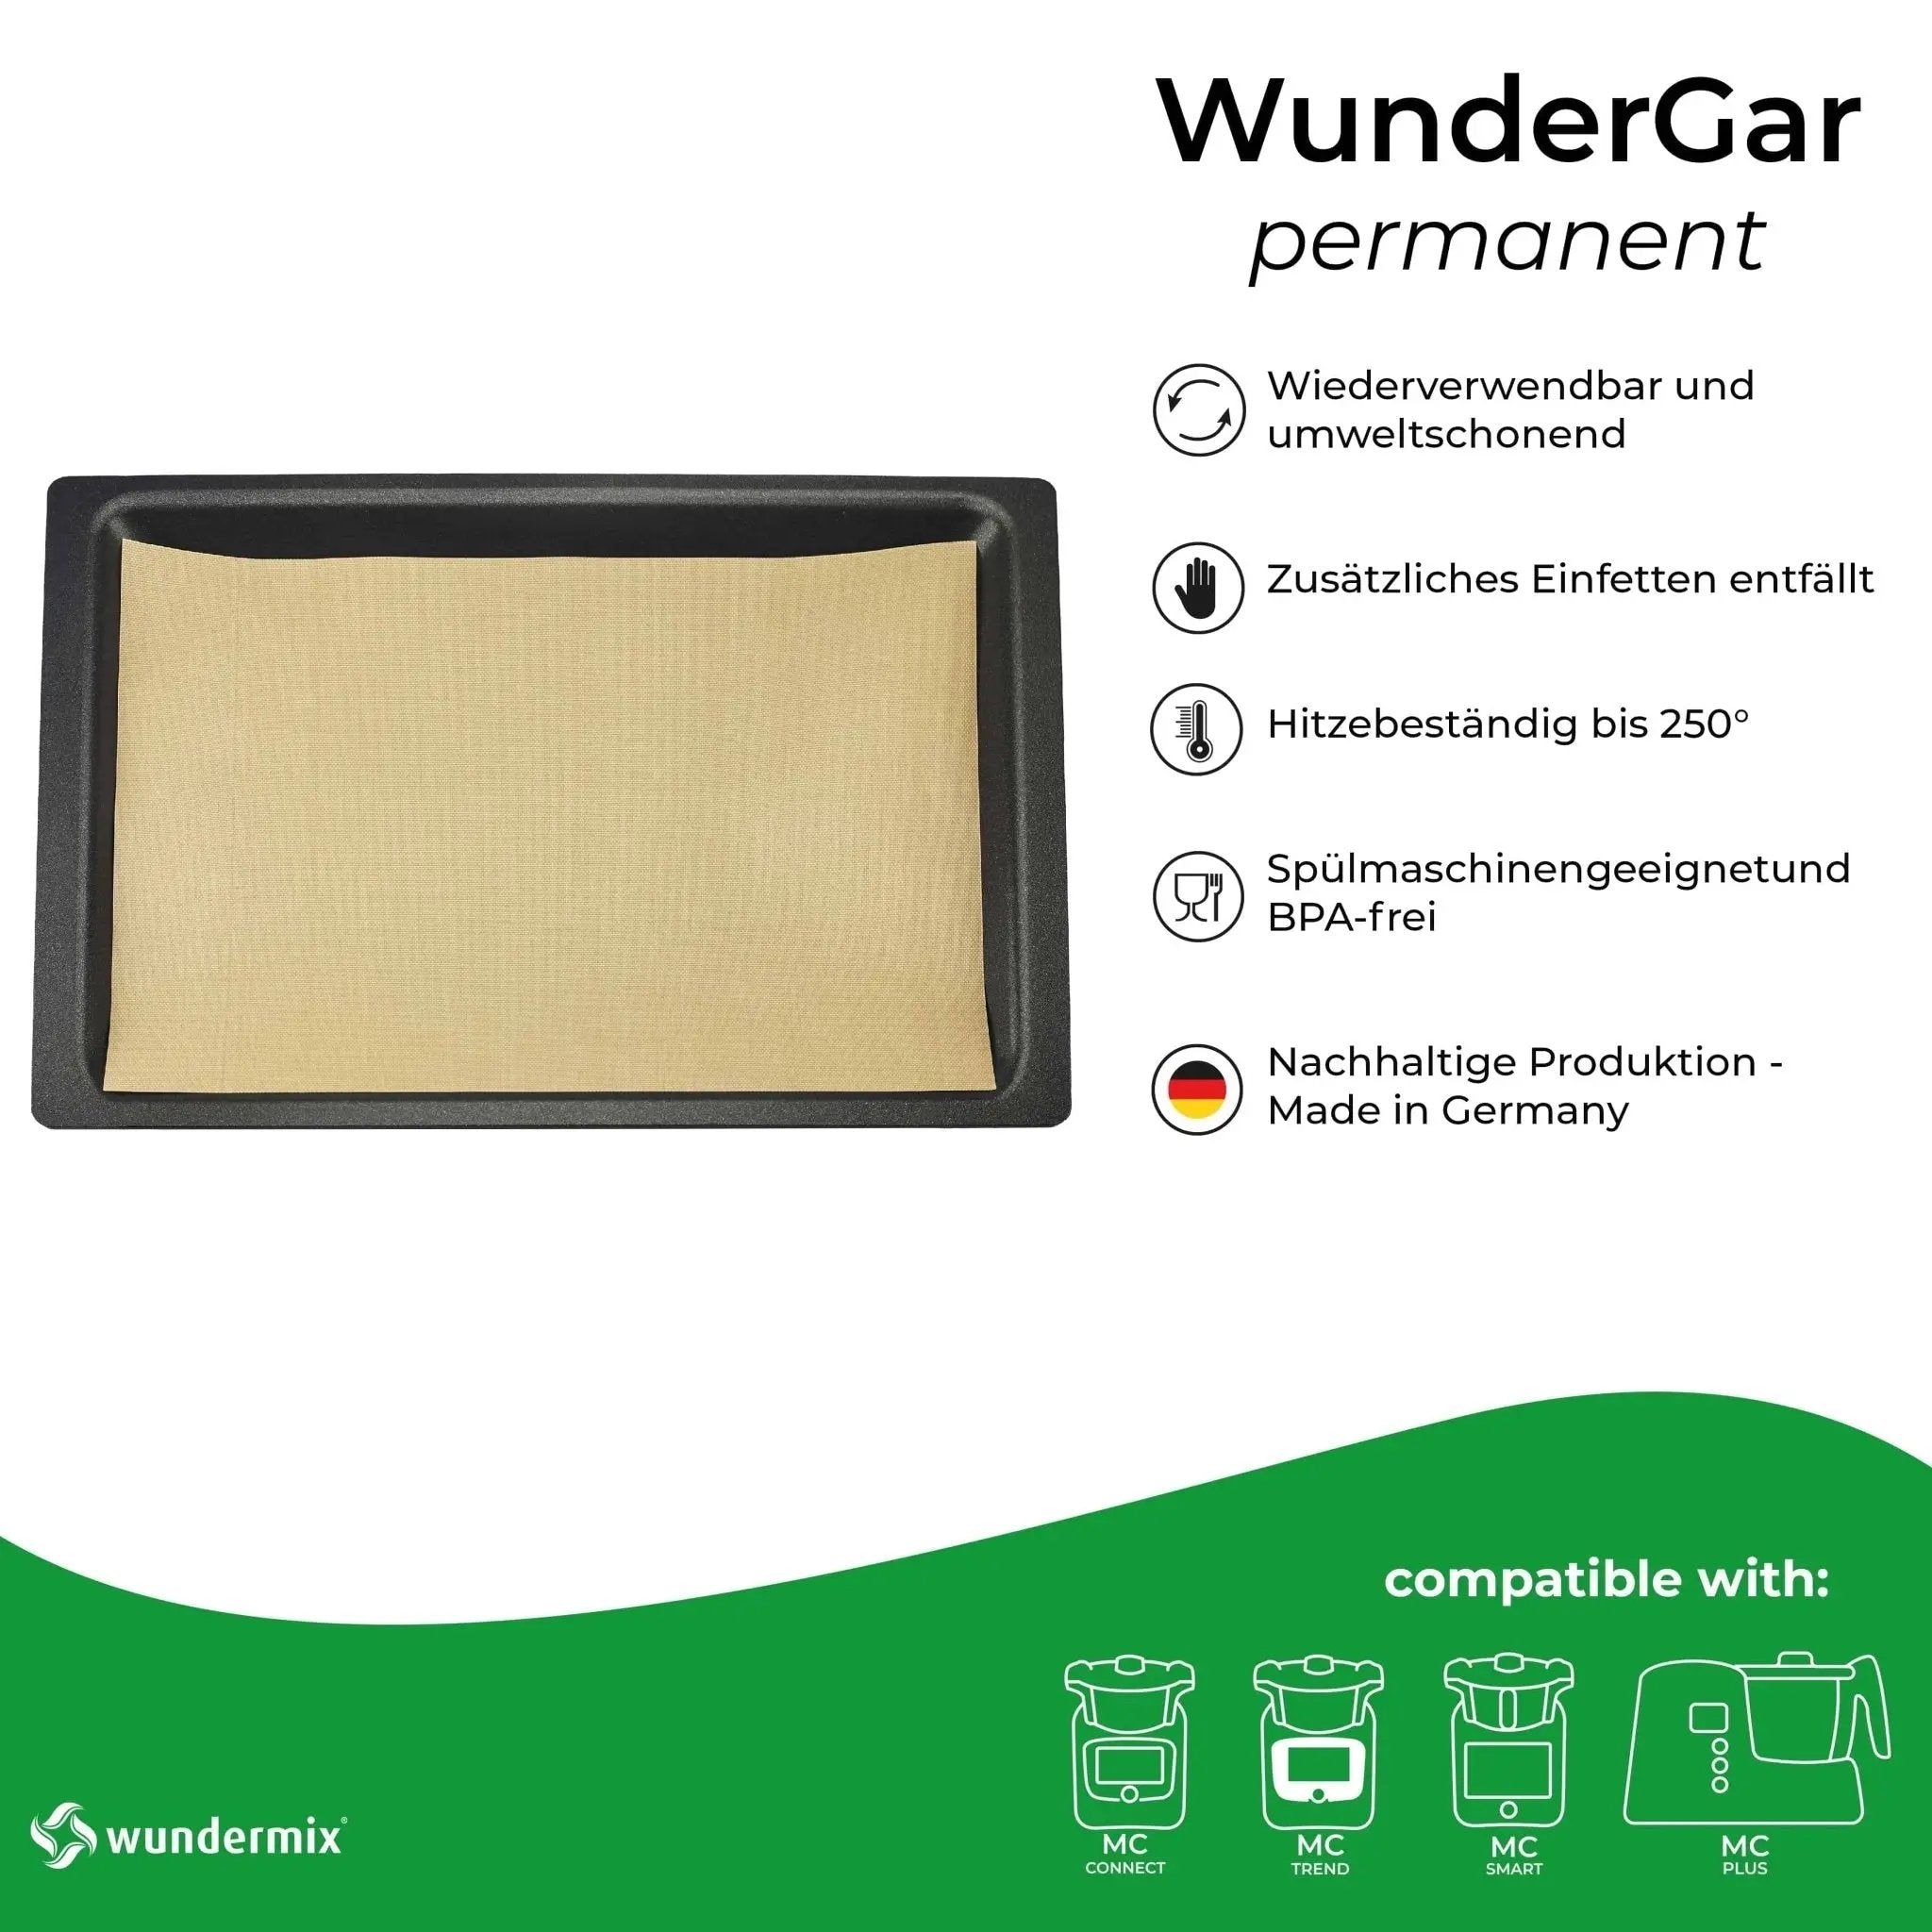 WunderGar® Permanent | Dauerbackfolie für den Backofen - Wundermix GmbH